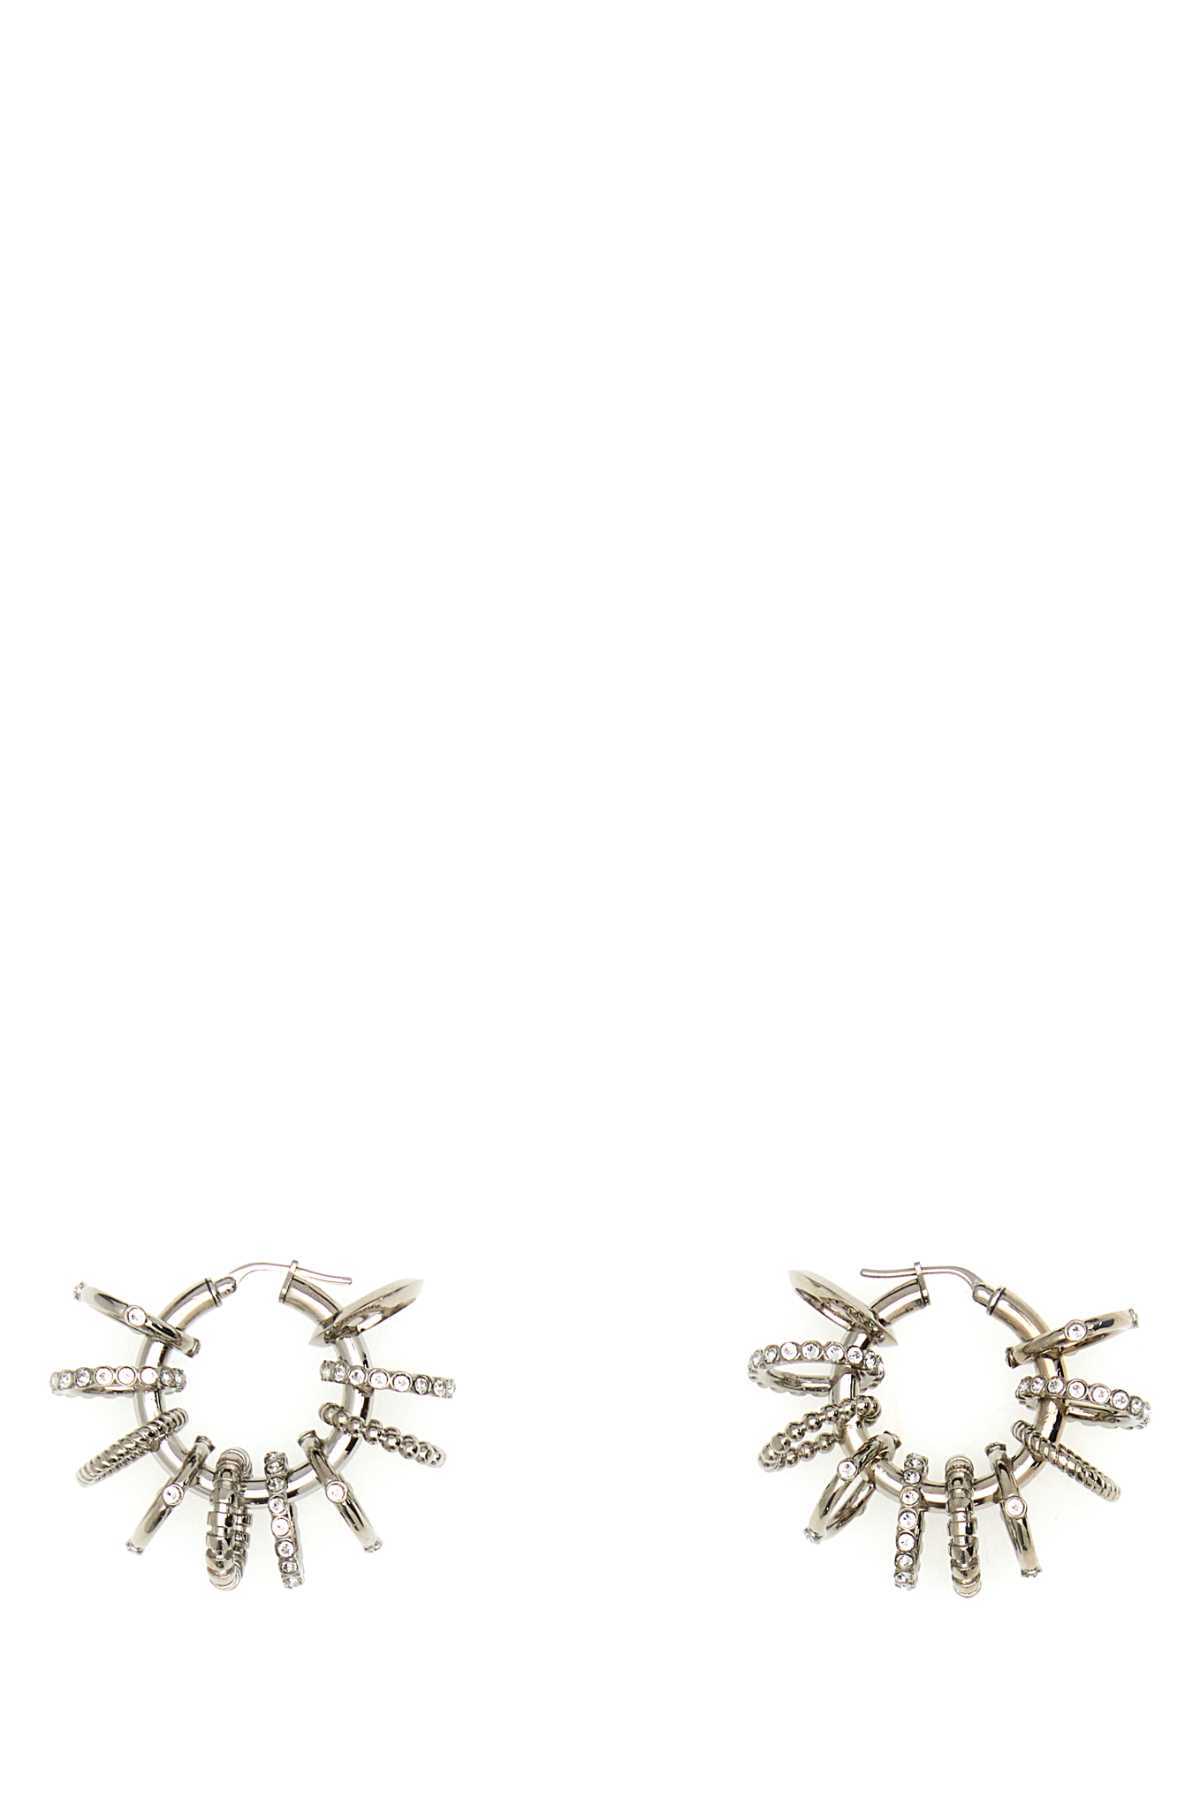 Amina Muaddi Silver Metal Multi Ring Earrings